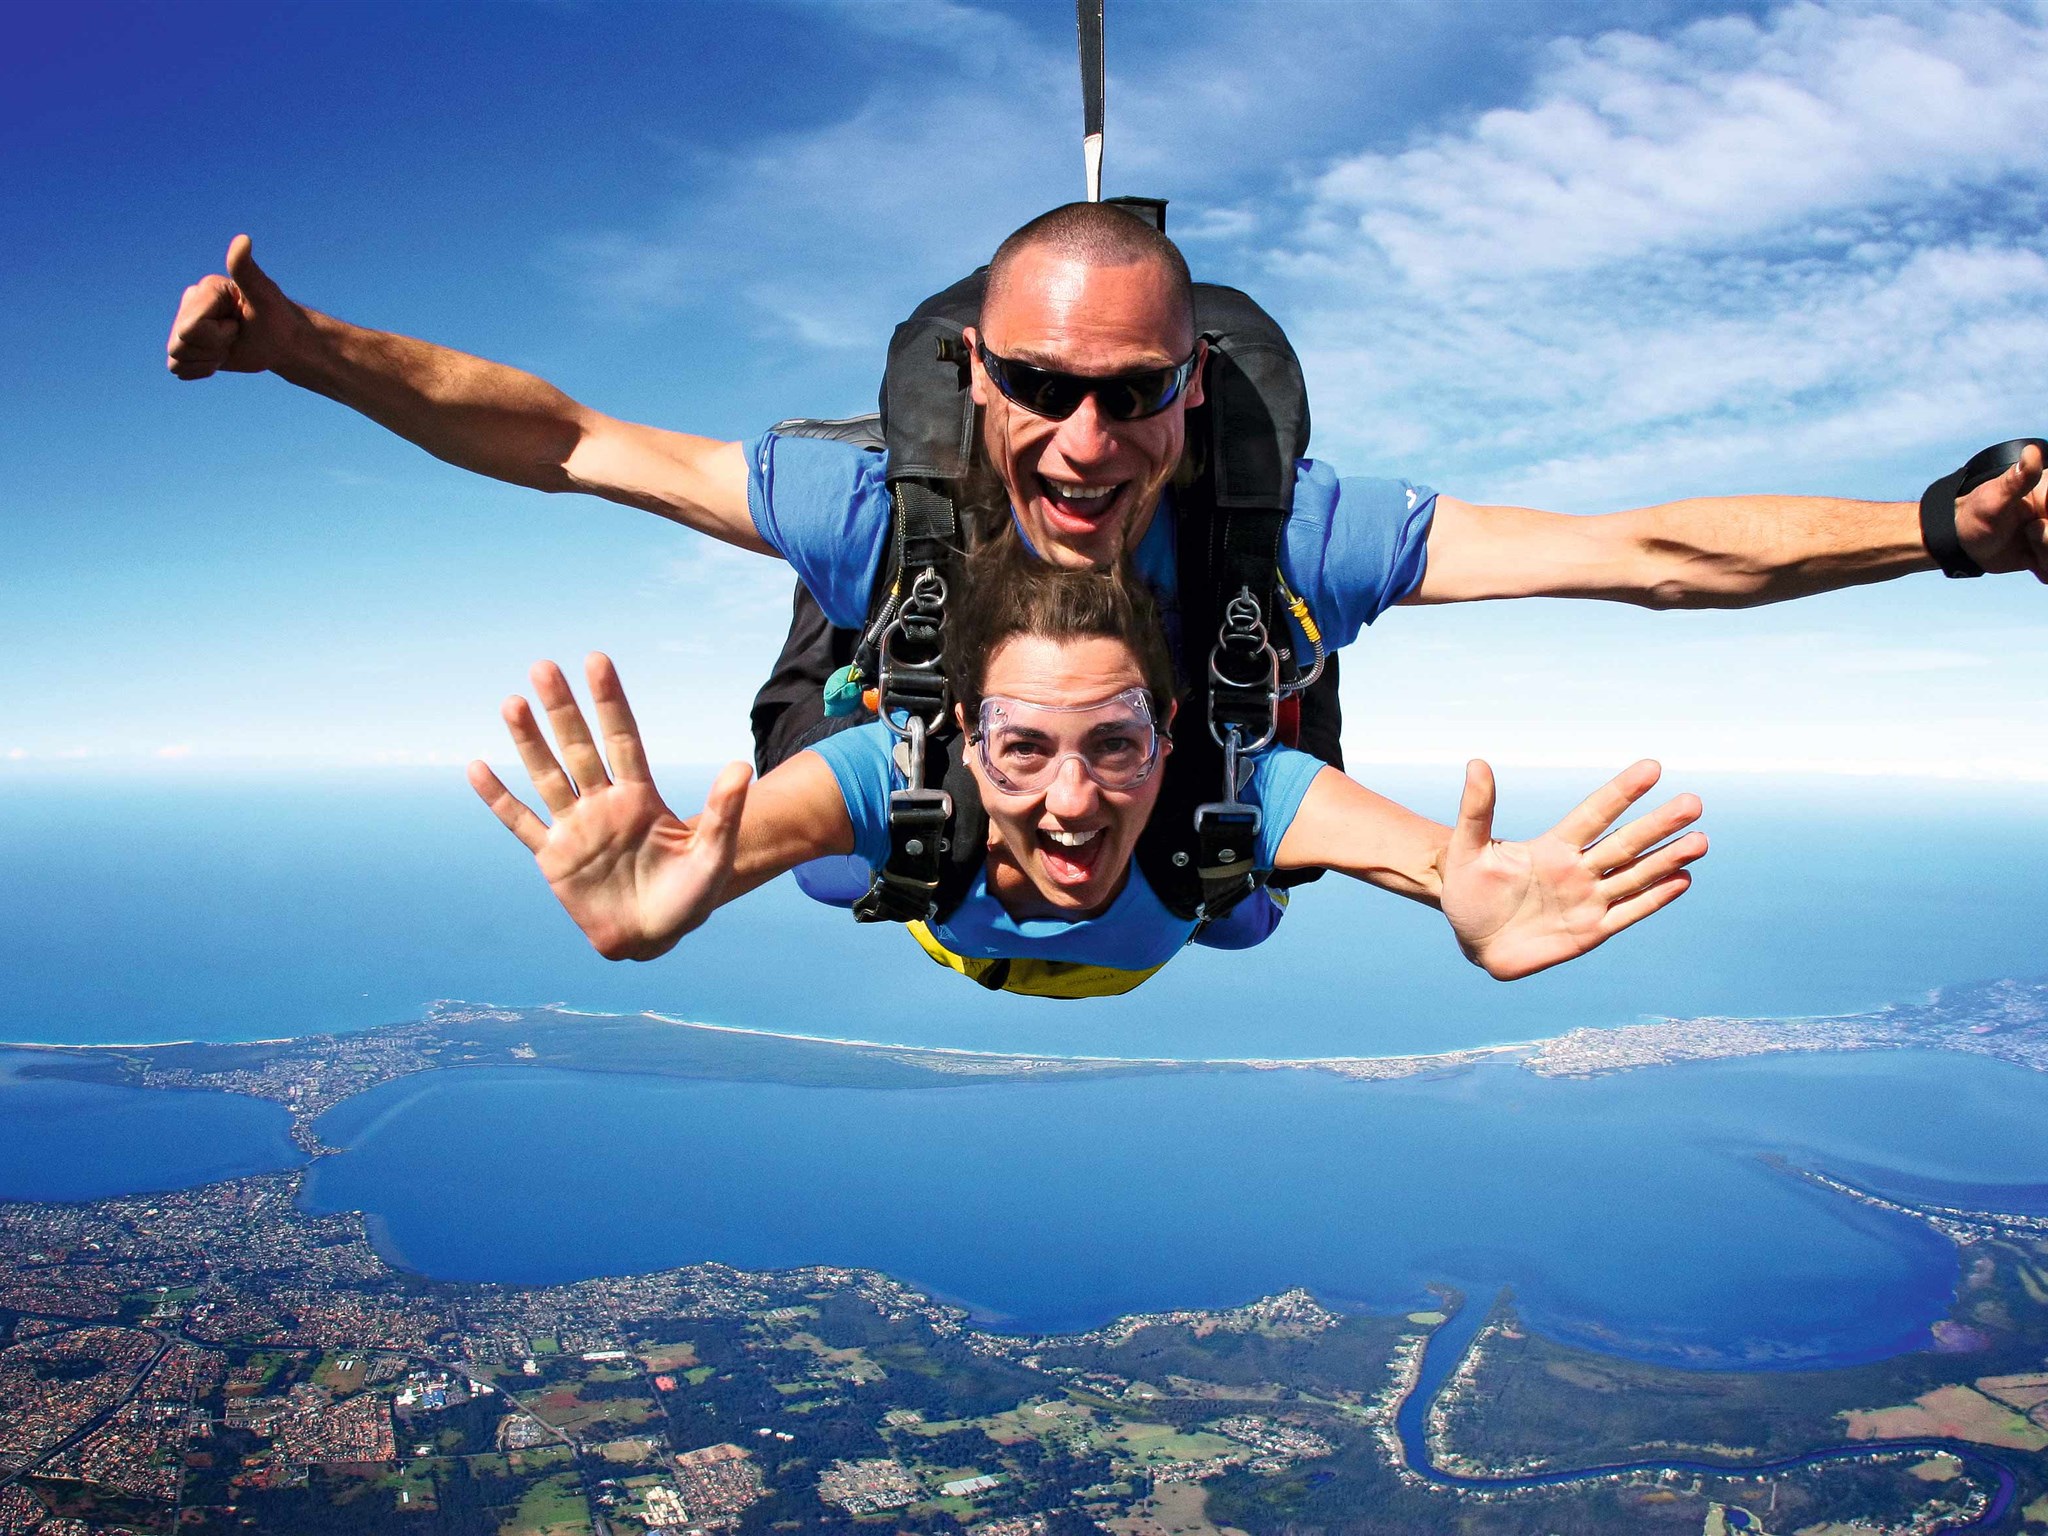 【新西兰高空跳伞胜地】皇后镇 Nzone Skydive 高空跳伞体验 - KKday